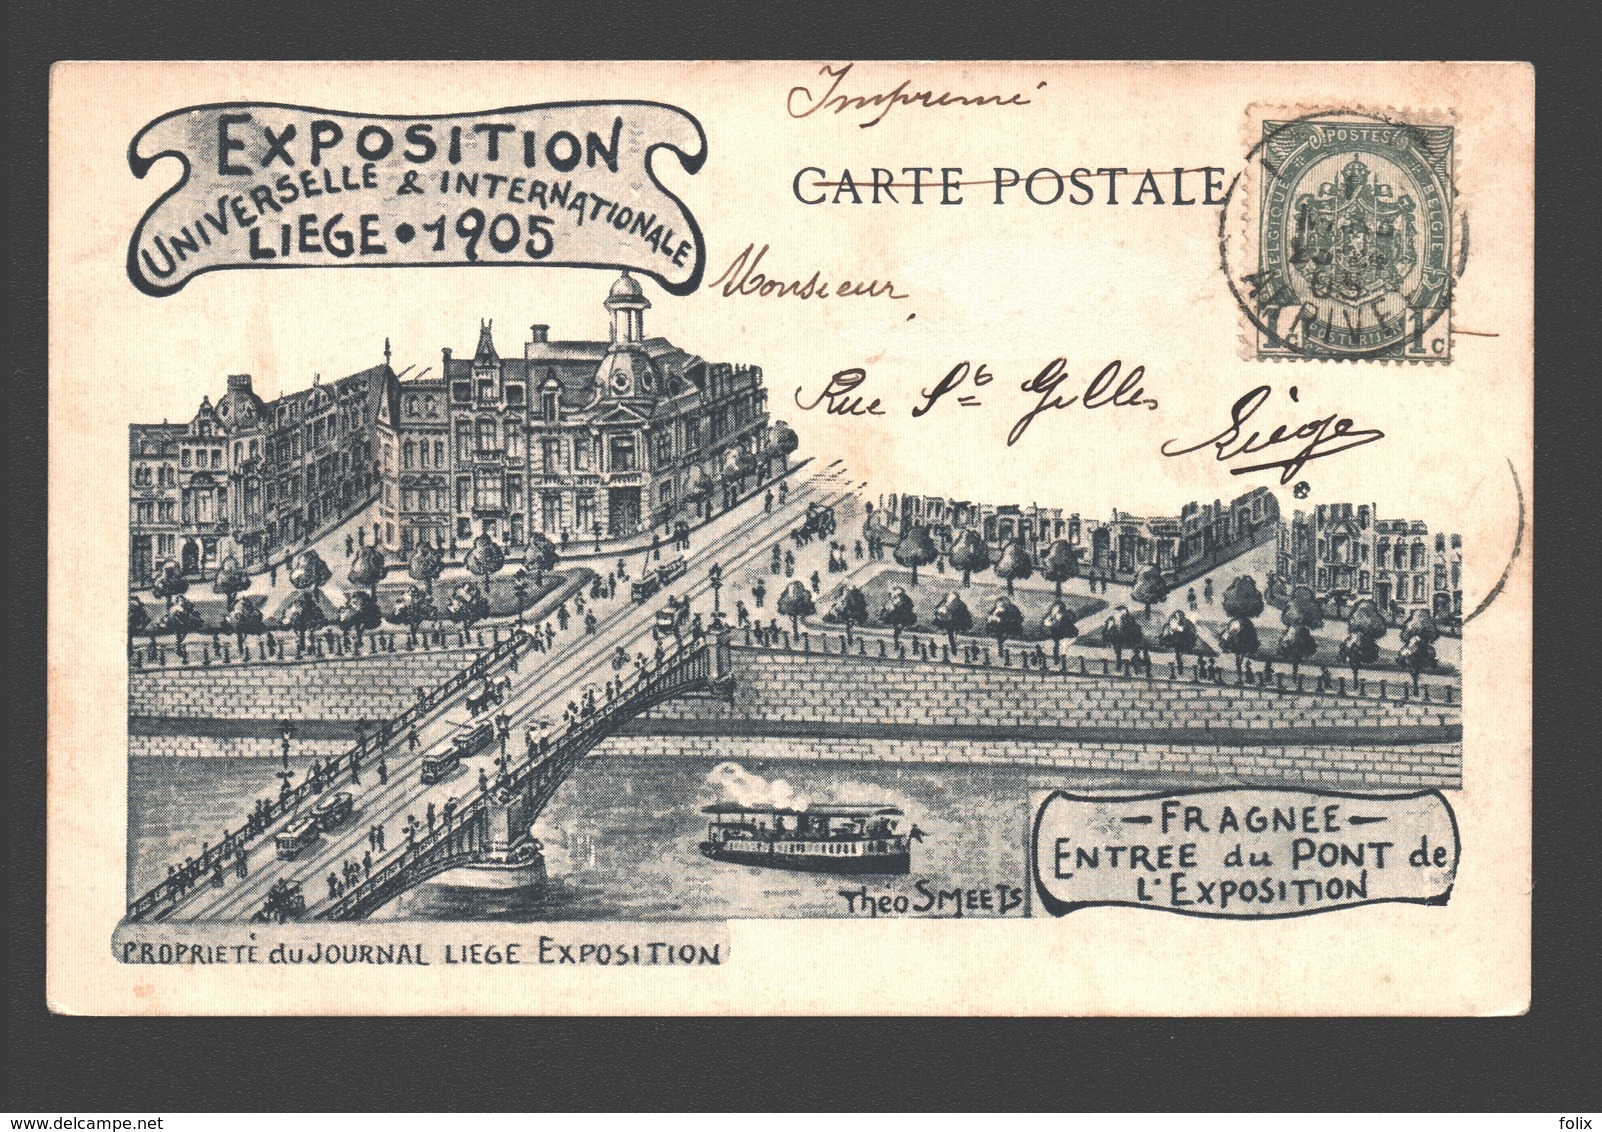 Liège - Exposition Universelle & Internationale Liège 1905 - Fragnée - Entrée Du Pont De L'Exposition - Dos Simple - Liege